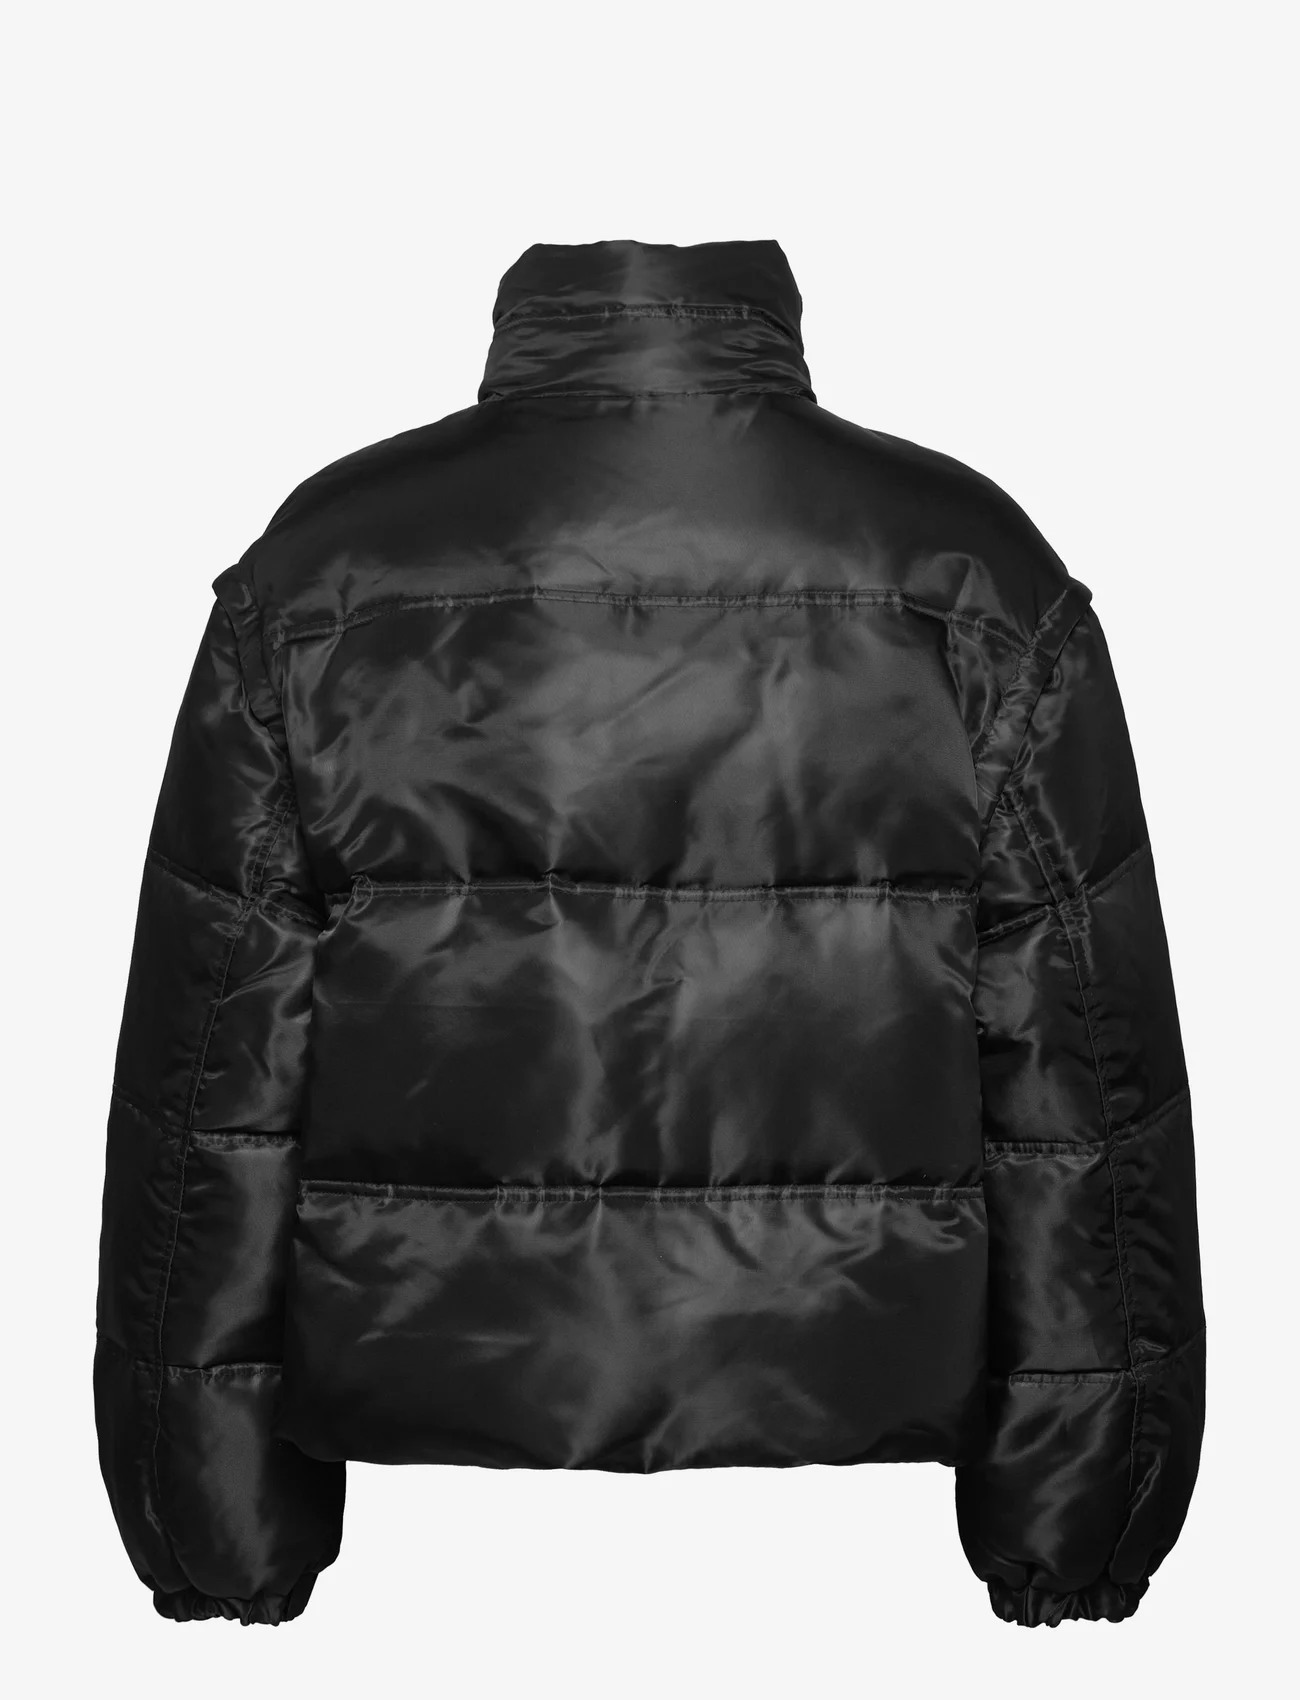 NORR - Bondi 2-in-1 down jacket - forede jakker - black - 1